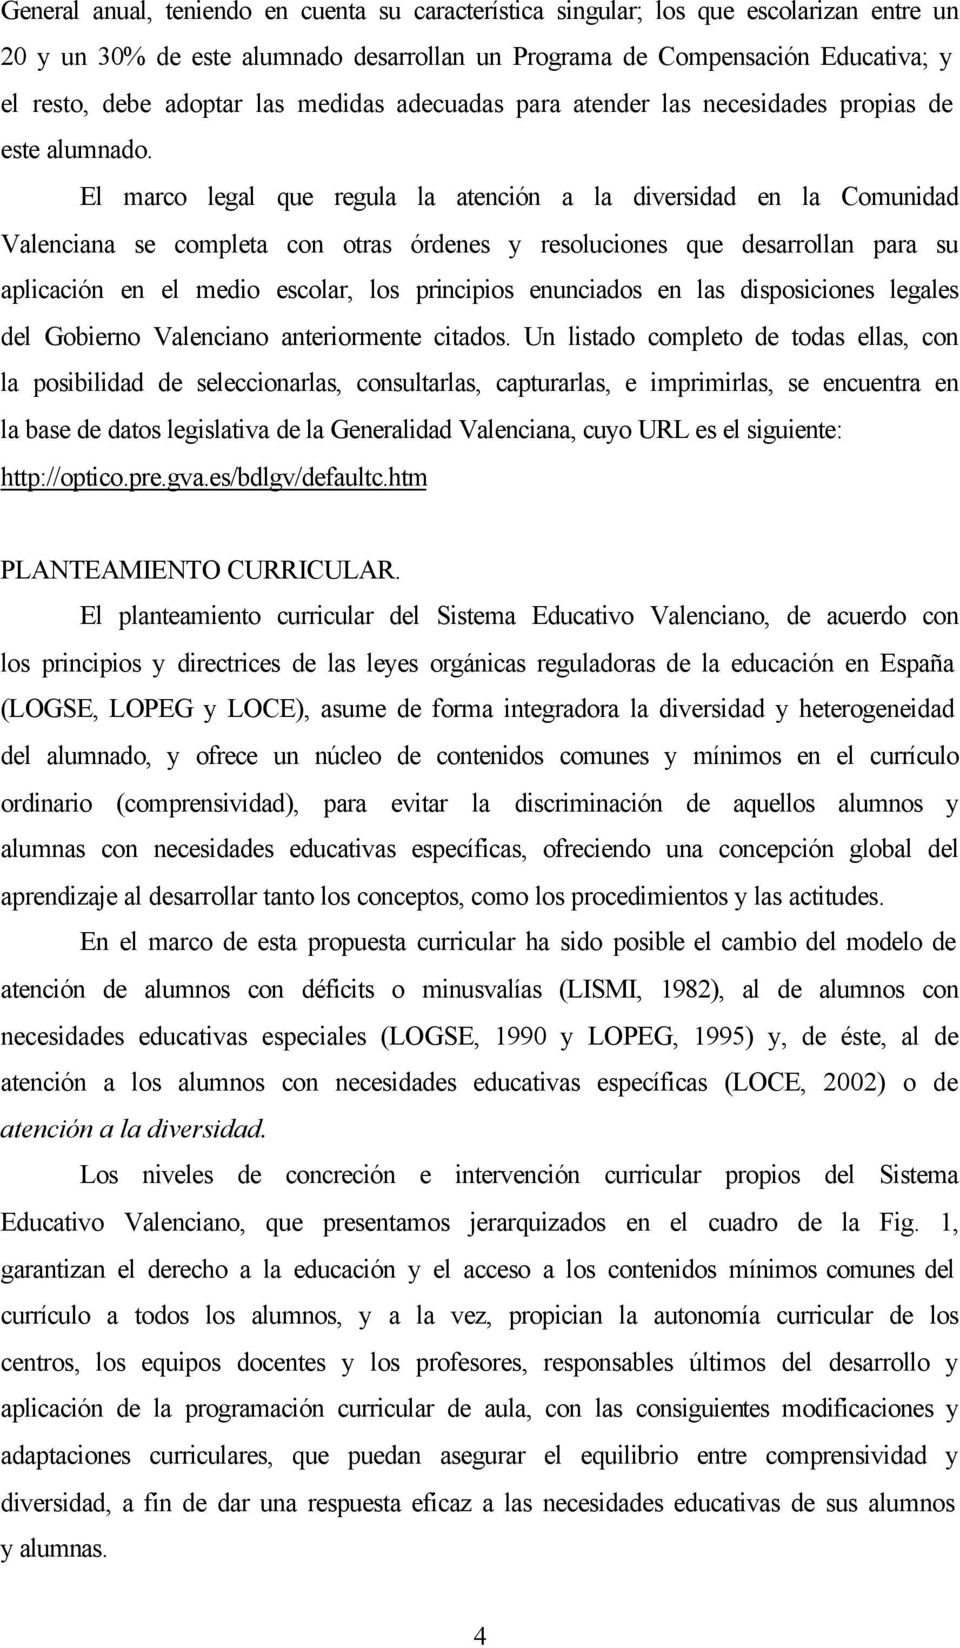 El marco legal que regula la atención a la diversidad en la Comunidad Valenciana se completa con otras órdenes y resoluciones que desarrollan para su aplicación en el medio escolar, los principios